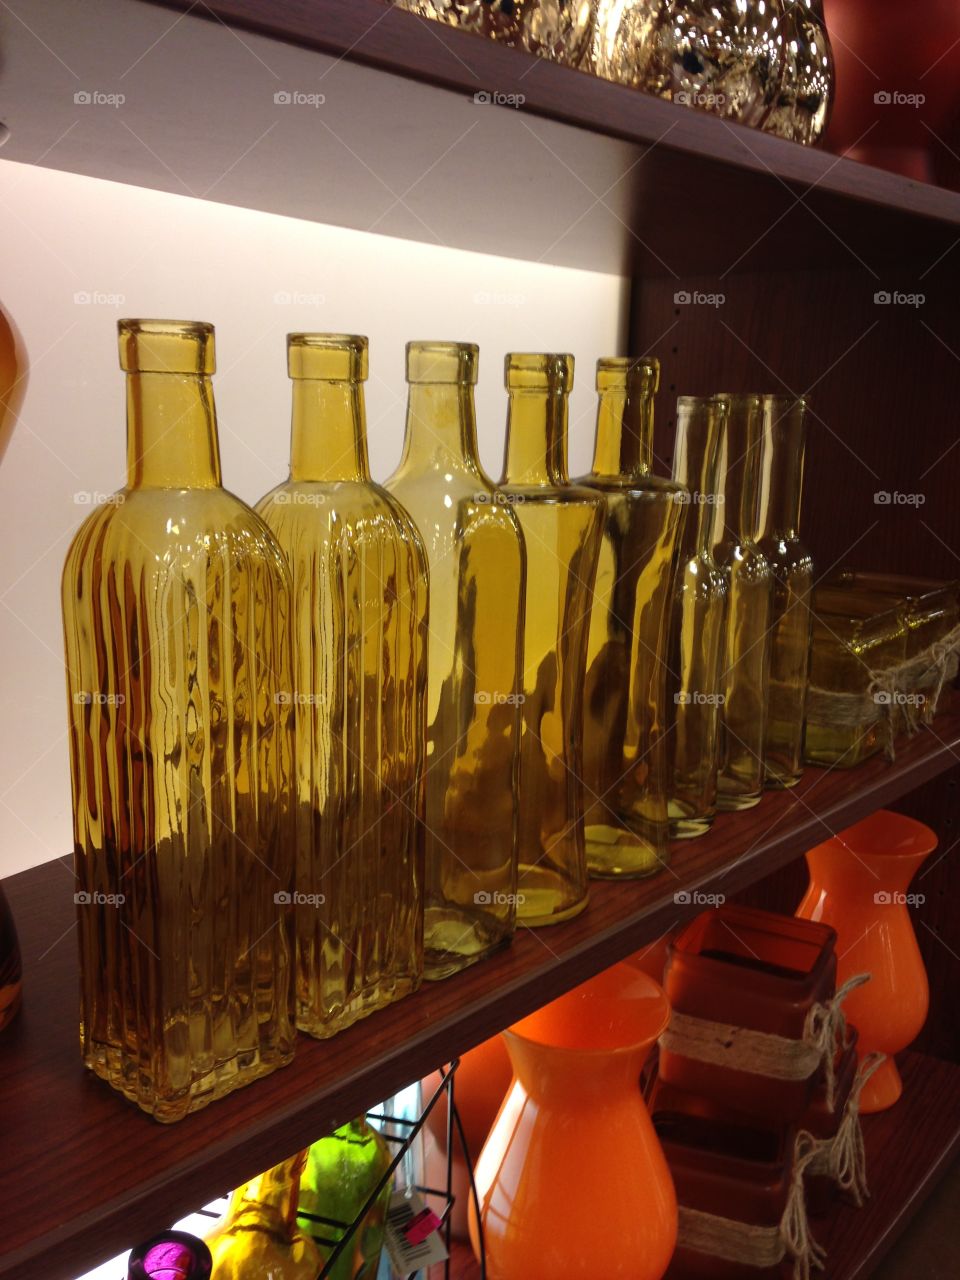 Bottles lined up